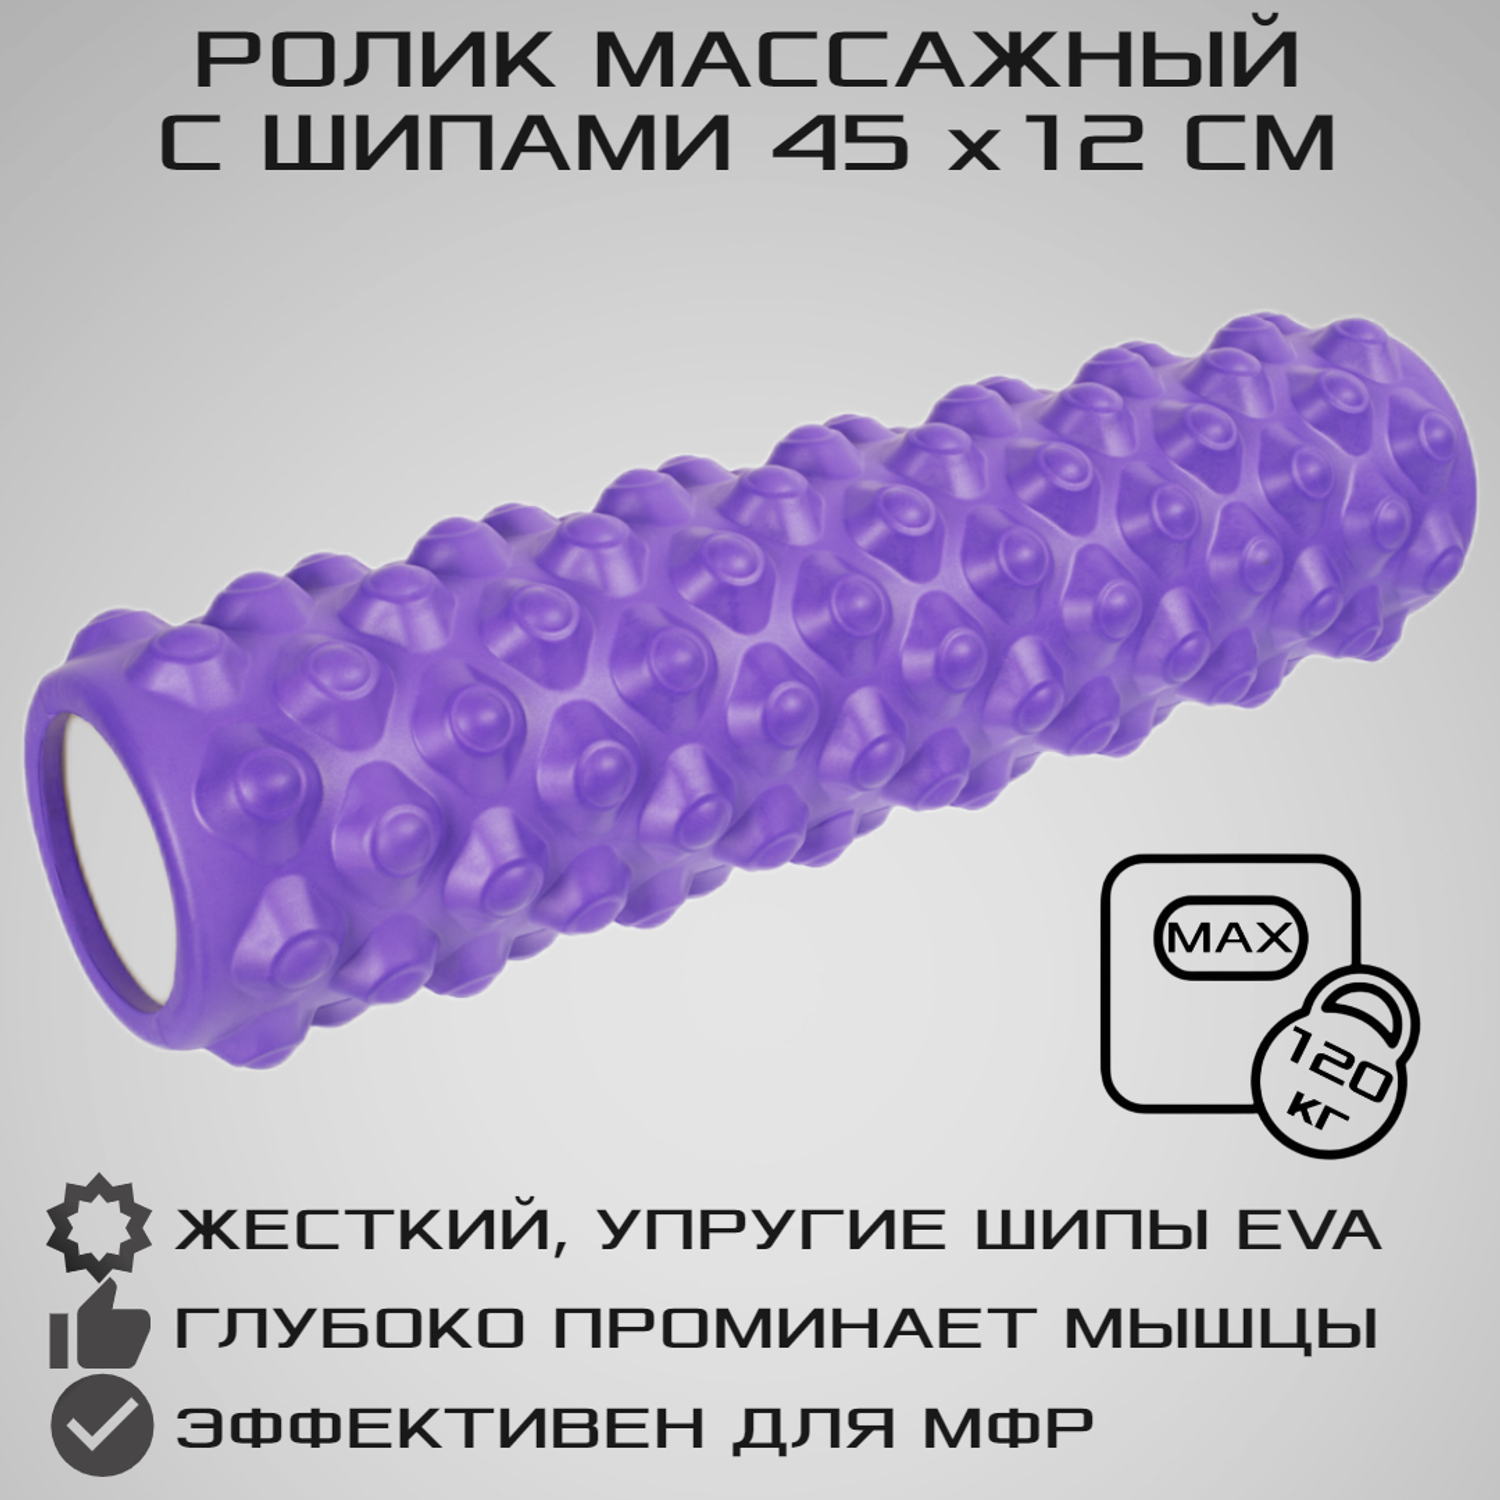 Ролик массажный STRONG BODY с шипами спортивный для фитнеса МФР йоги и пилатес 45 см х 12 см фиолетовый - фото 1